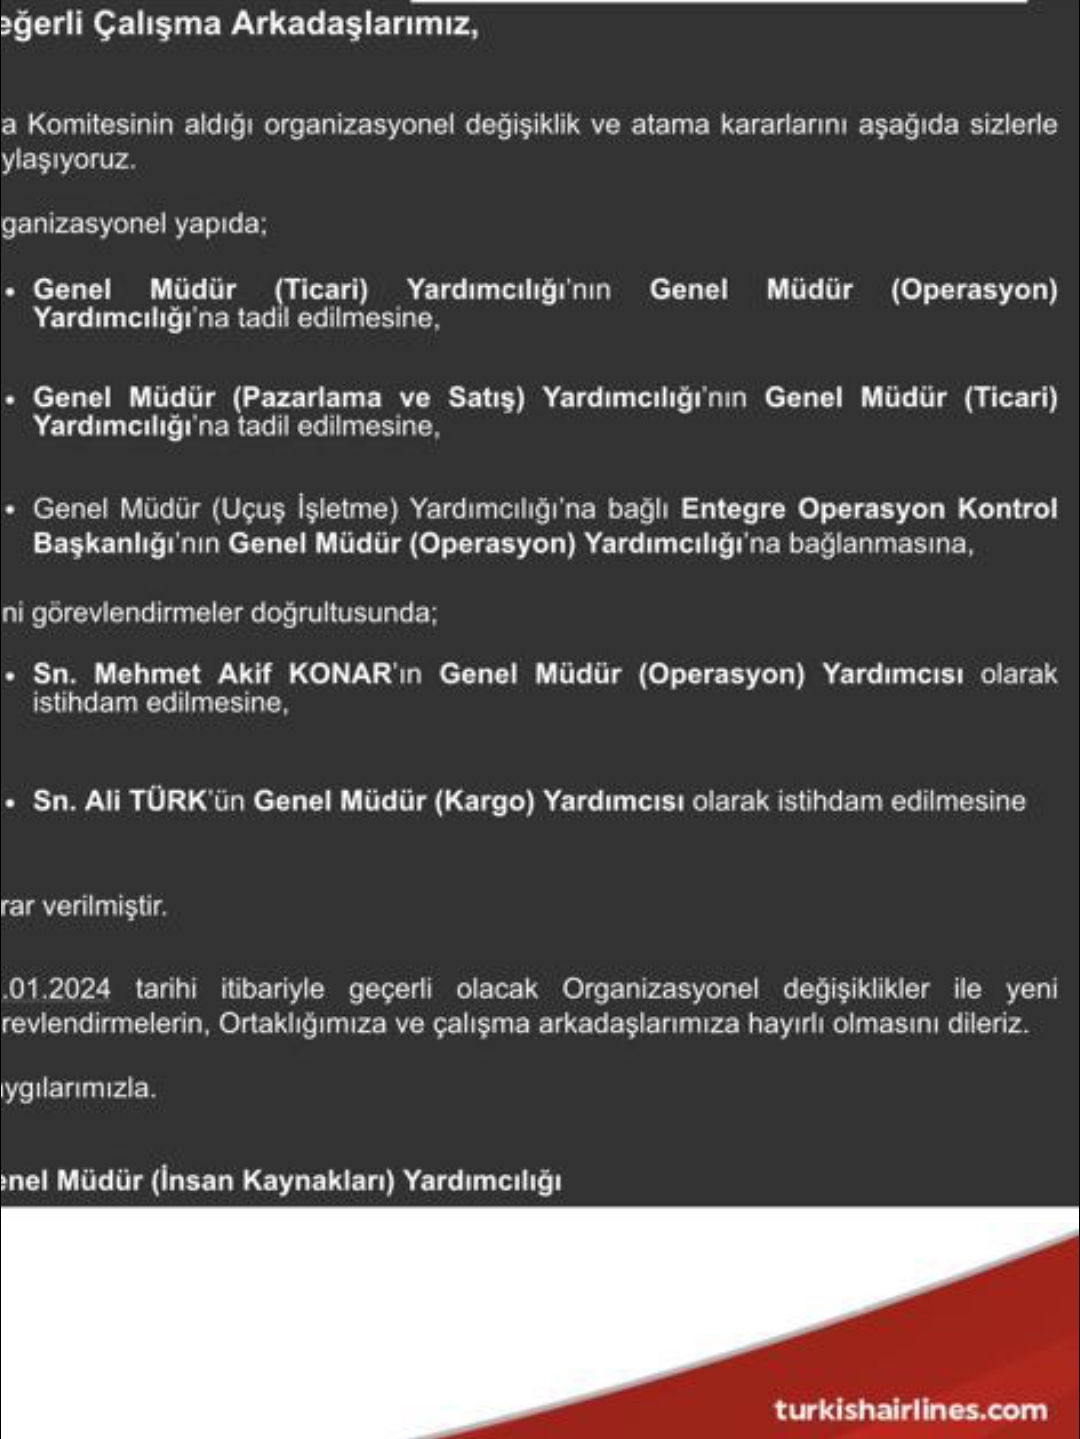 Ali Türk ve Akif Konar'a Yeni Görev 6 Mayıs 2024